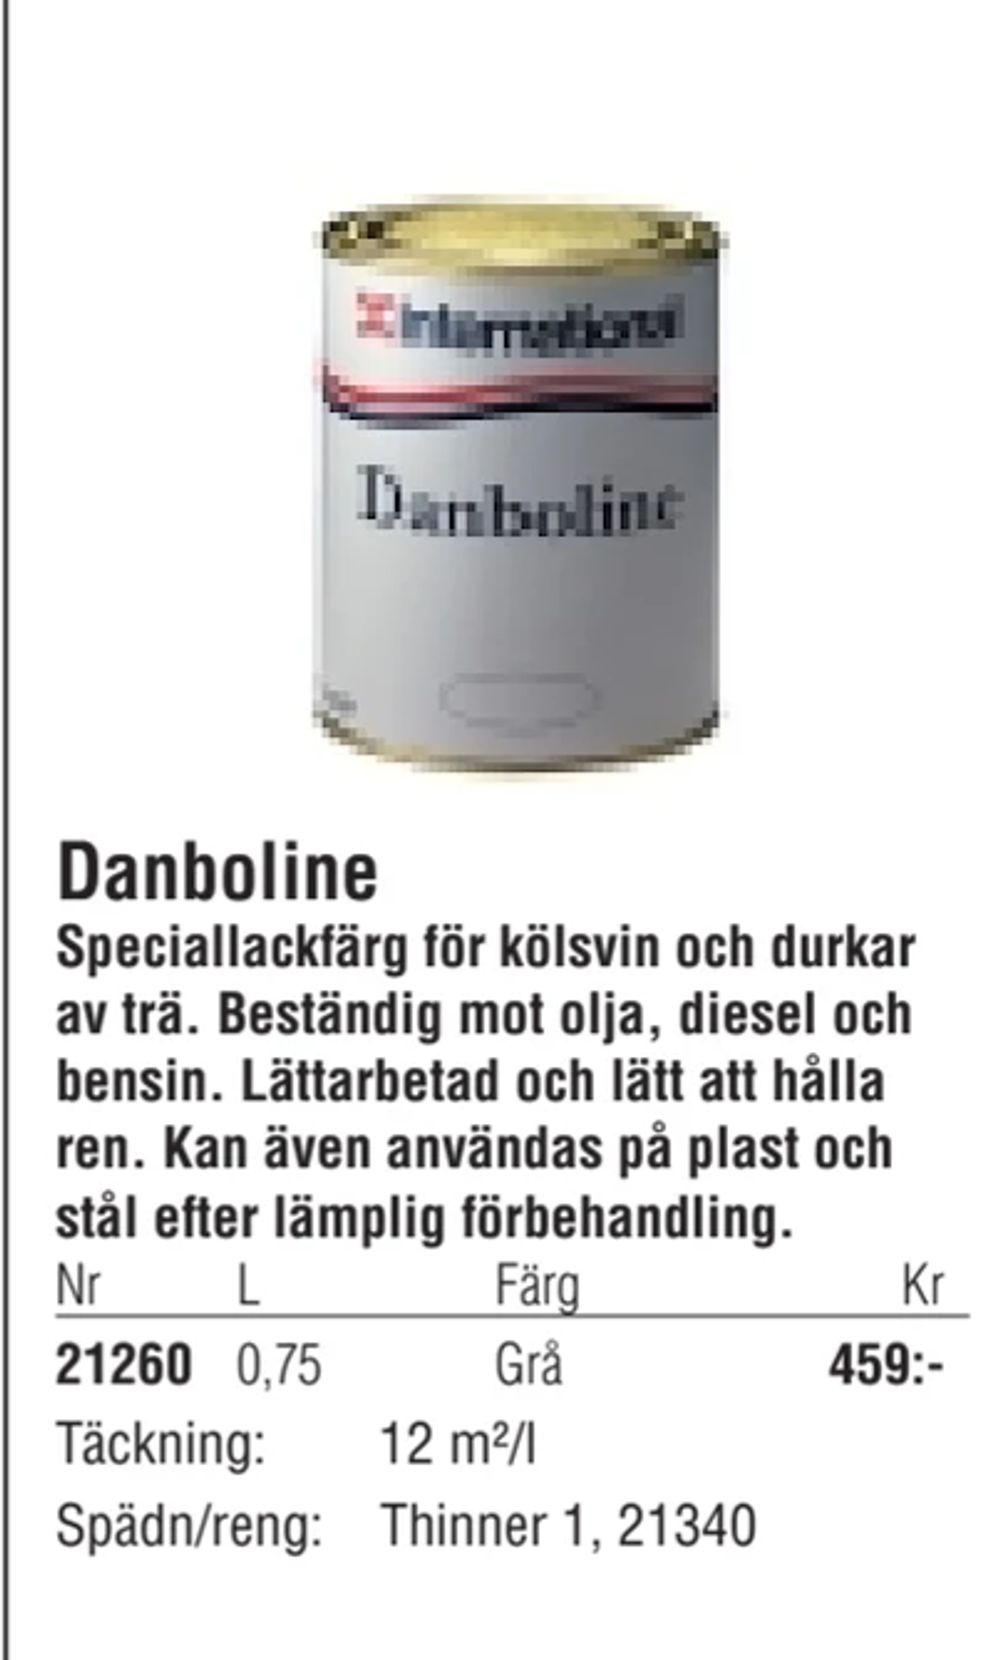 Erbjudanden på Danboline från Erlandsons Brygga för 459 kr